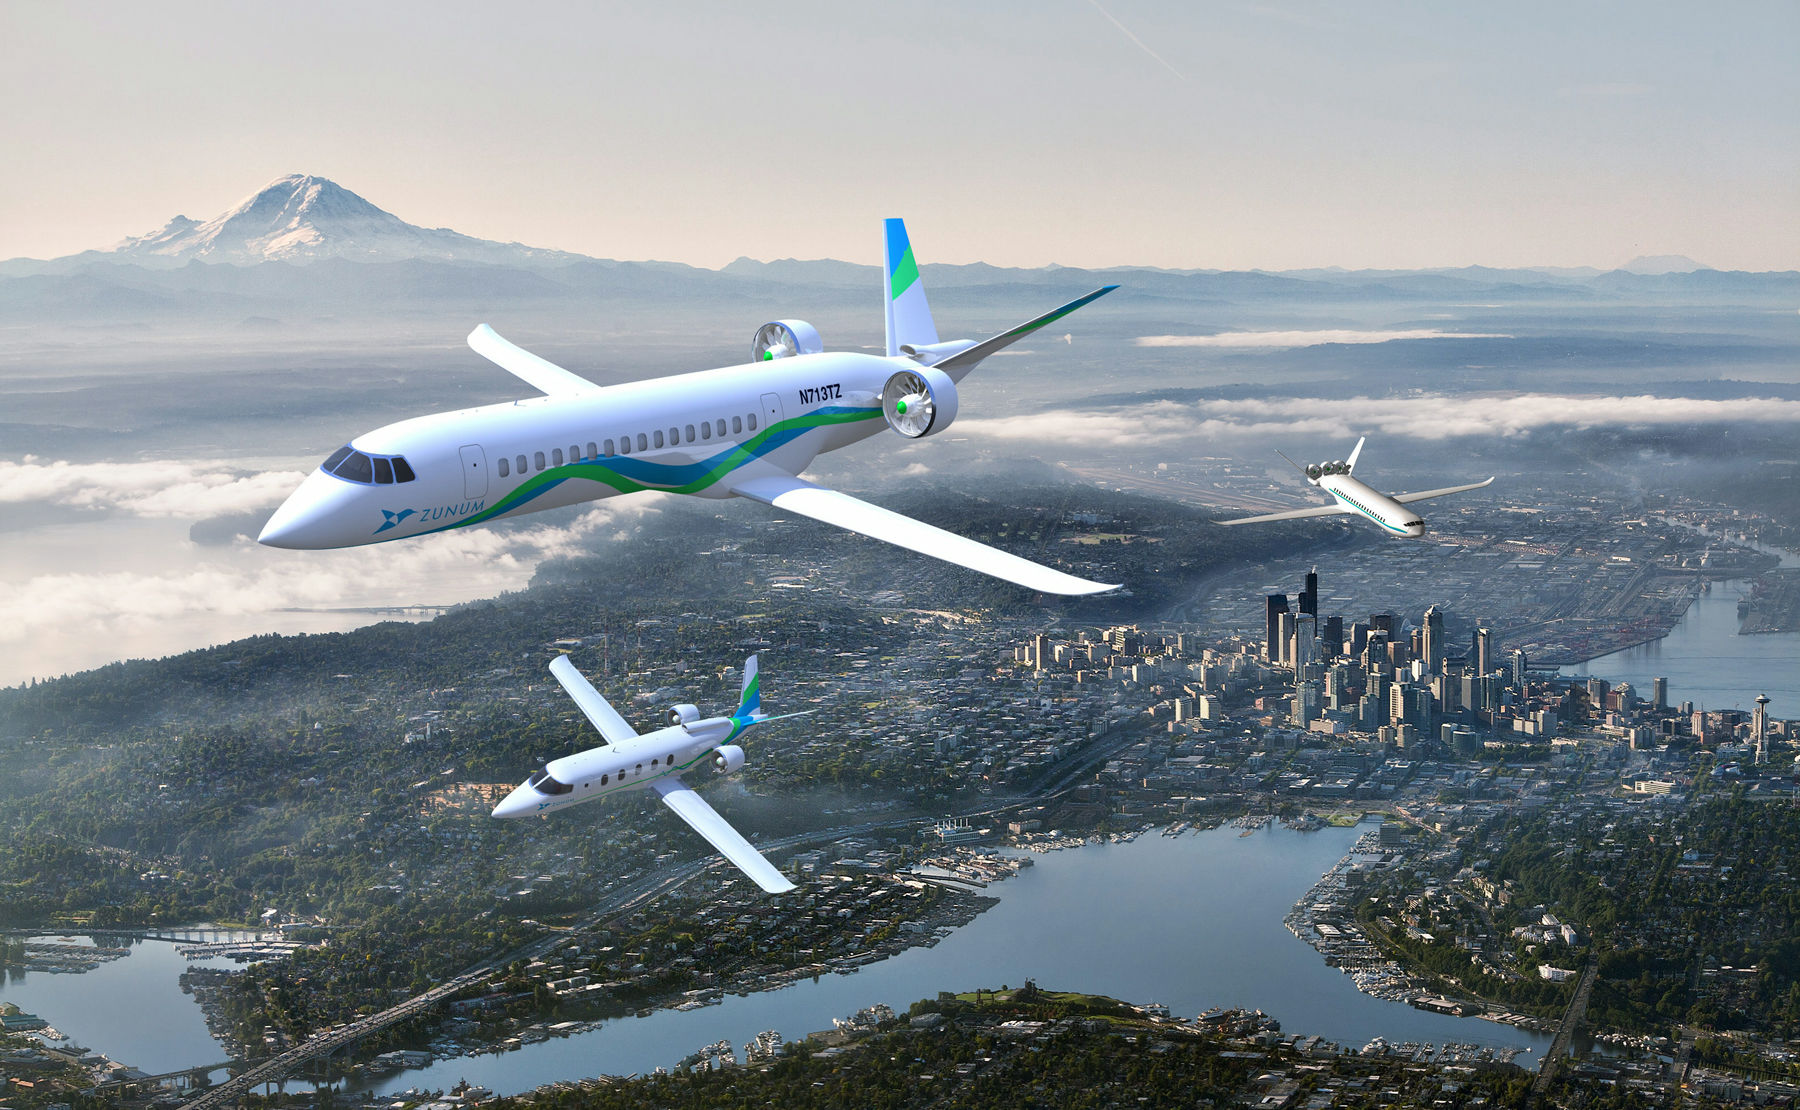 モーターで飛ぶ電気小型旅客機が22年までの飛行を目指して開発中 Gigazine